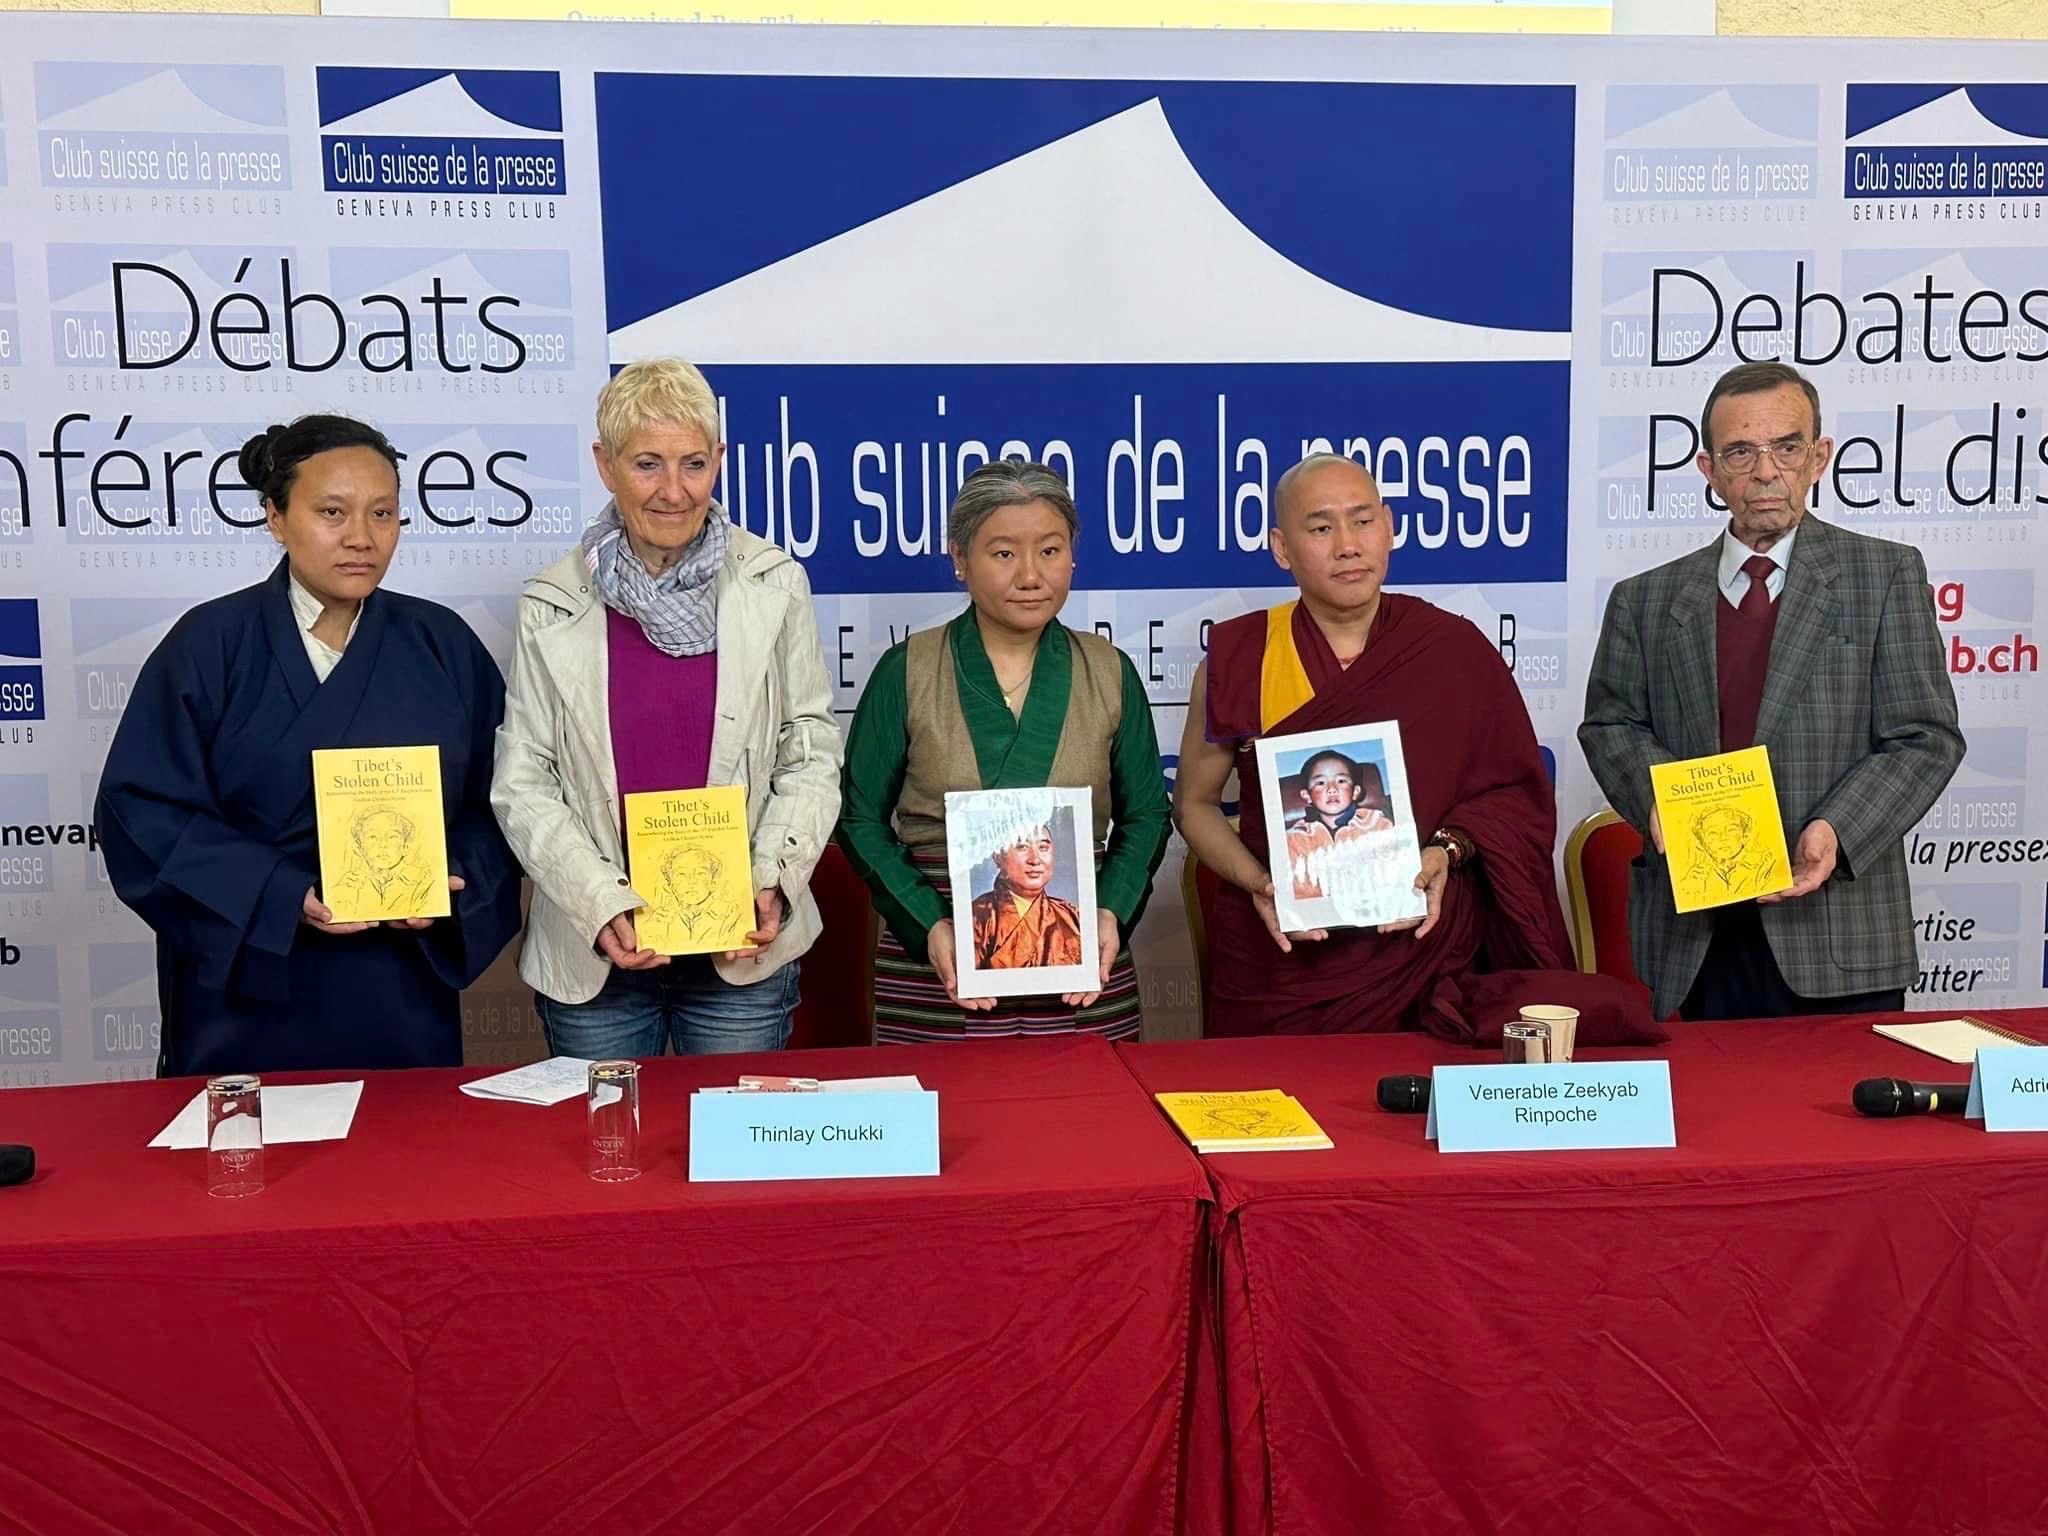 Tibetische Gruppen in der Schweiz erneuern ihre Forderungen nach der Freilassung des 11. Panchen Lama in Tibet